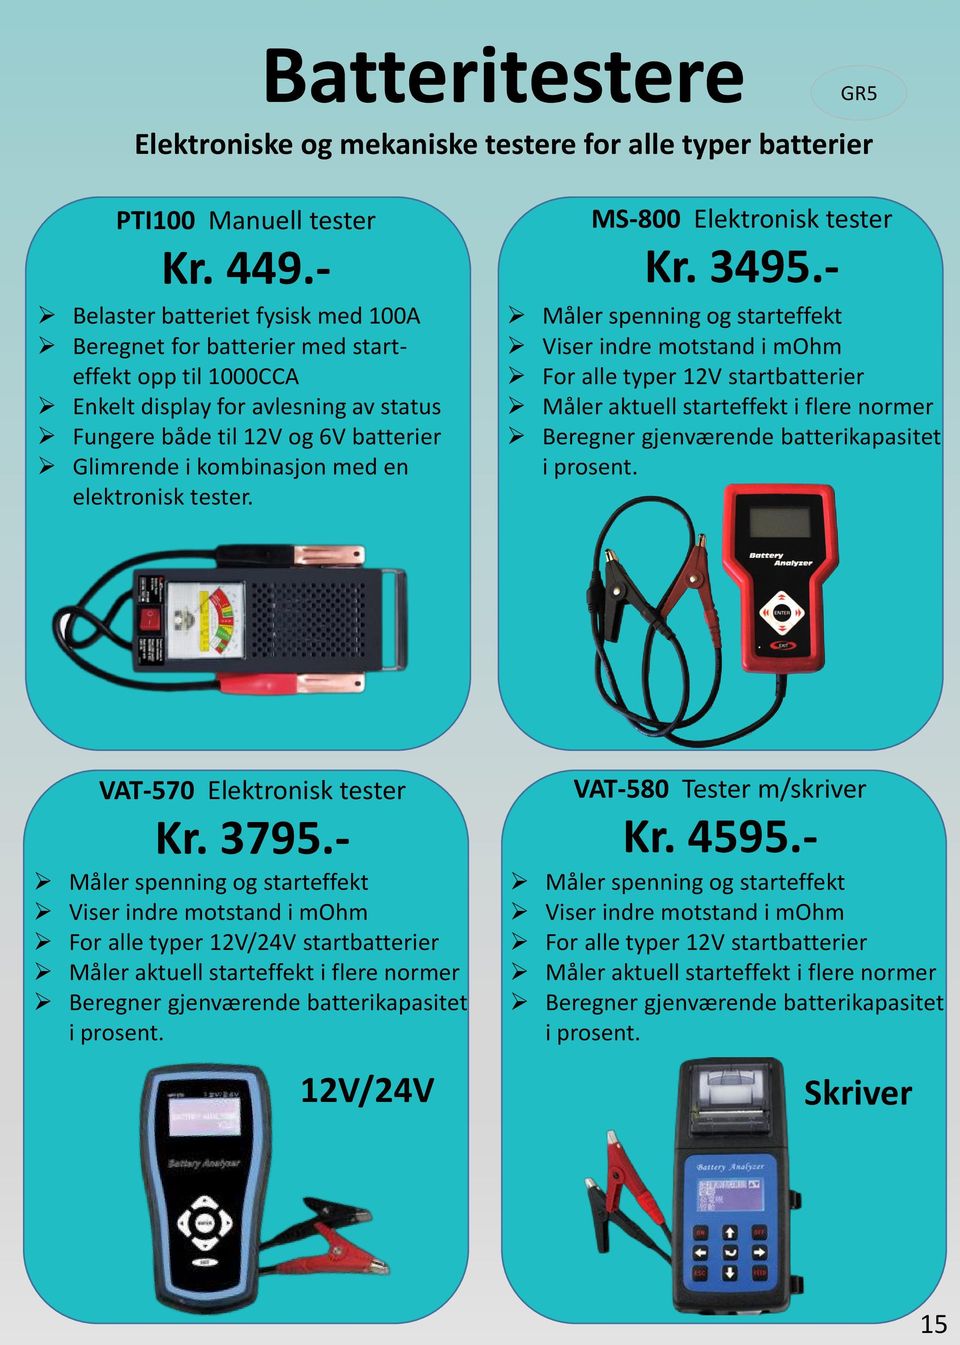 elektronisk tester. MS-800 Elektronisk tester Kr. 3495.